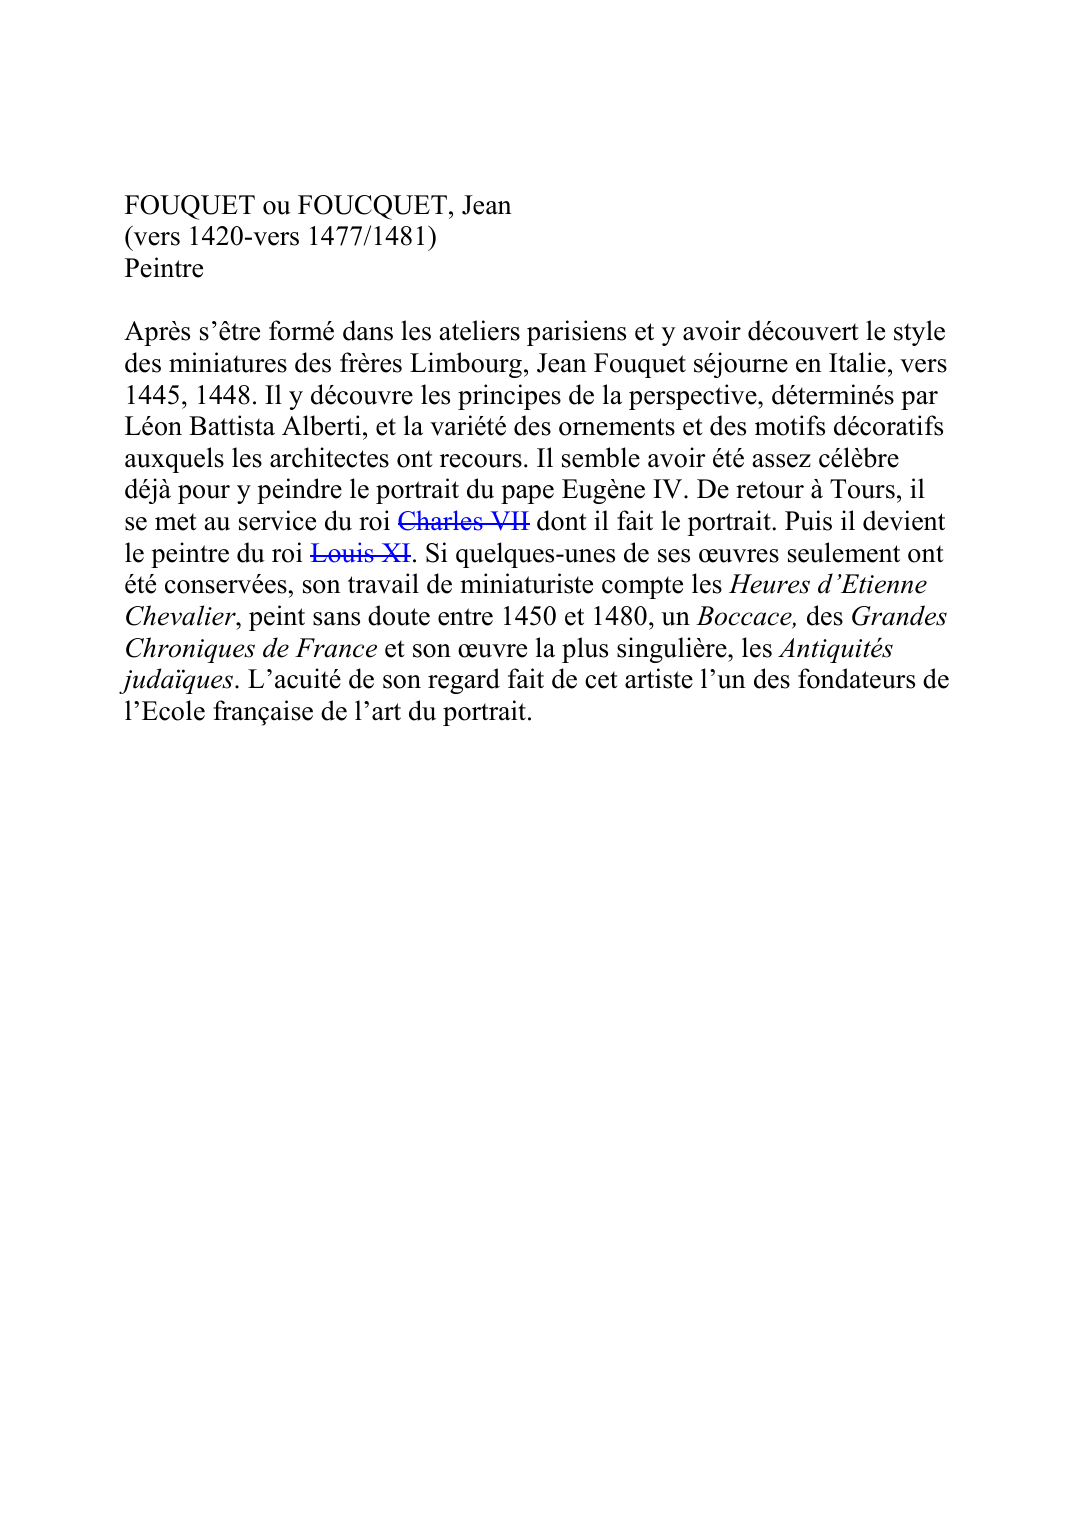 Prévisualisation du document FOUQUET ou FOUCQUET, Jean(vers 1420-vers 1477/1481)PeintreAprès s'être formé dans les ateliers parisiens et y avoir découvert le styledes miniatures des frères Limbourg, Jean Fouquet séjourne en Italie, vers1445, 1448.